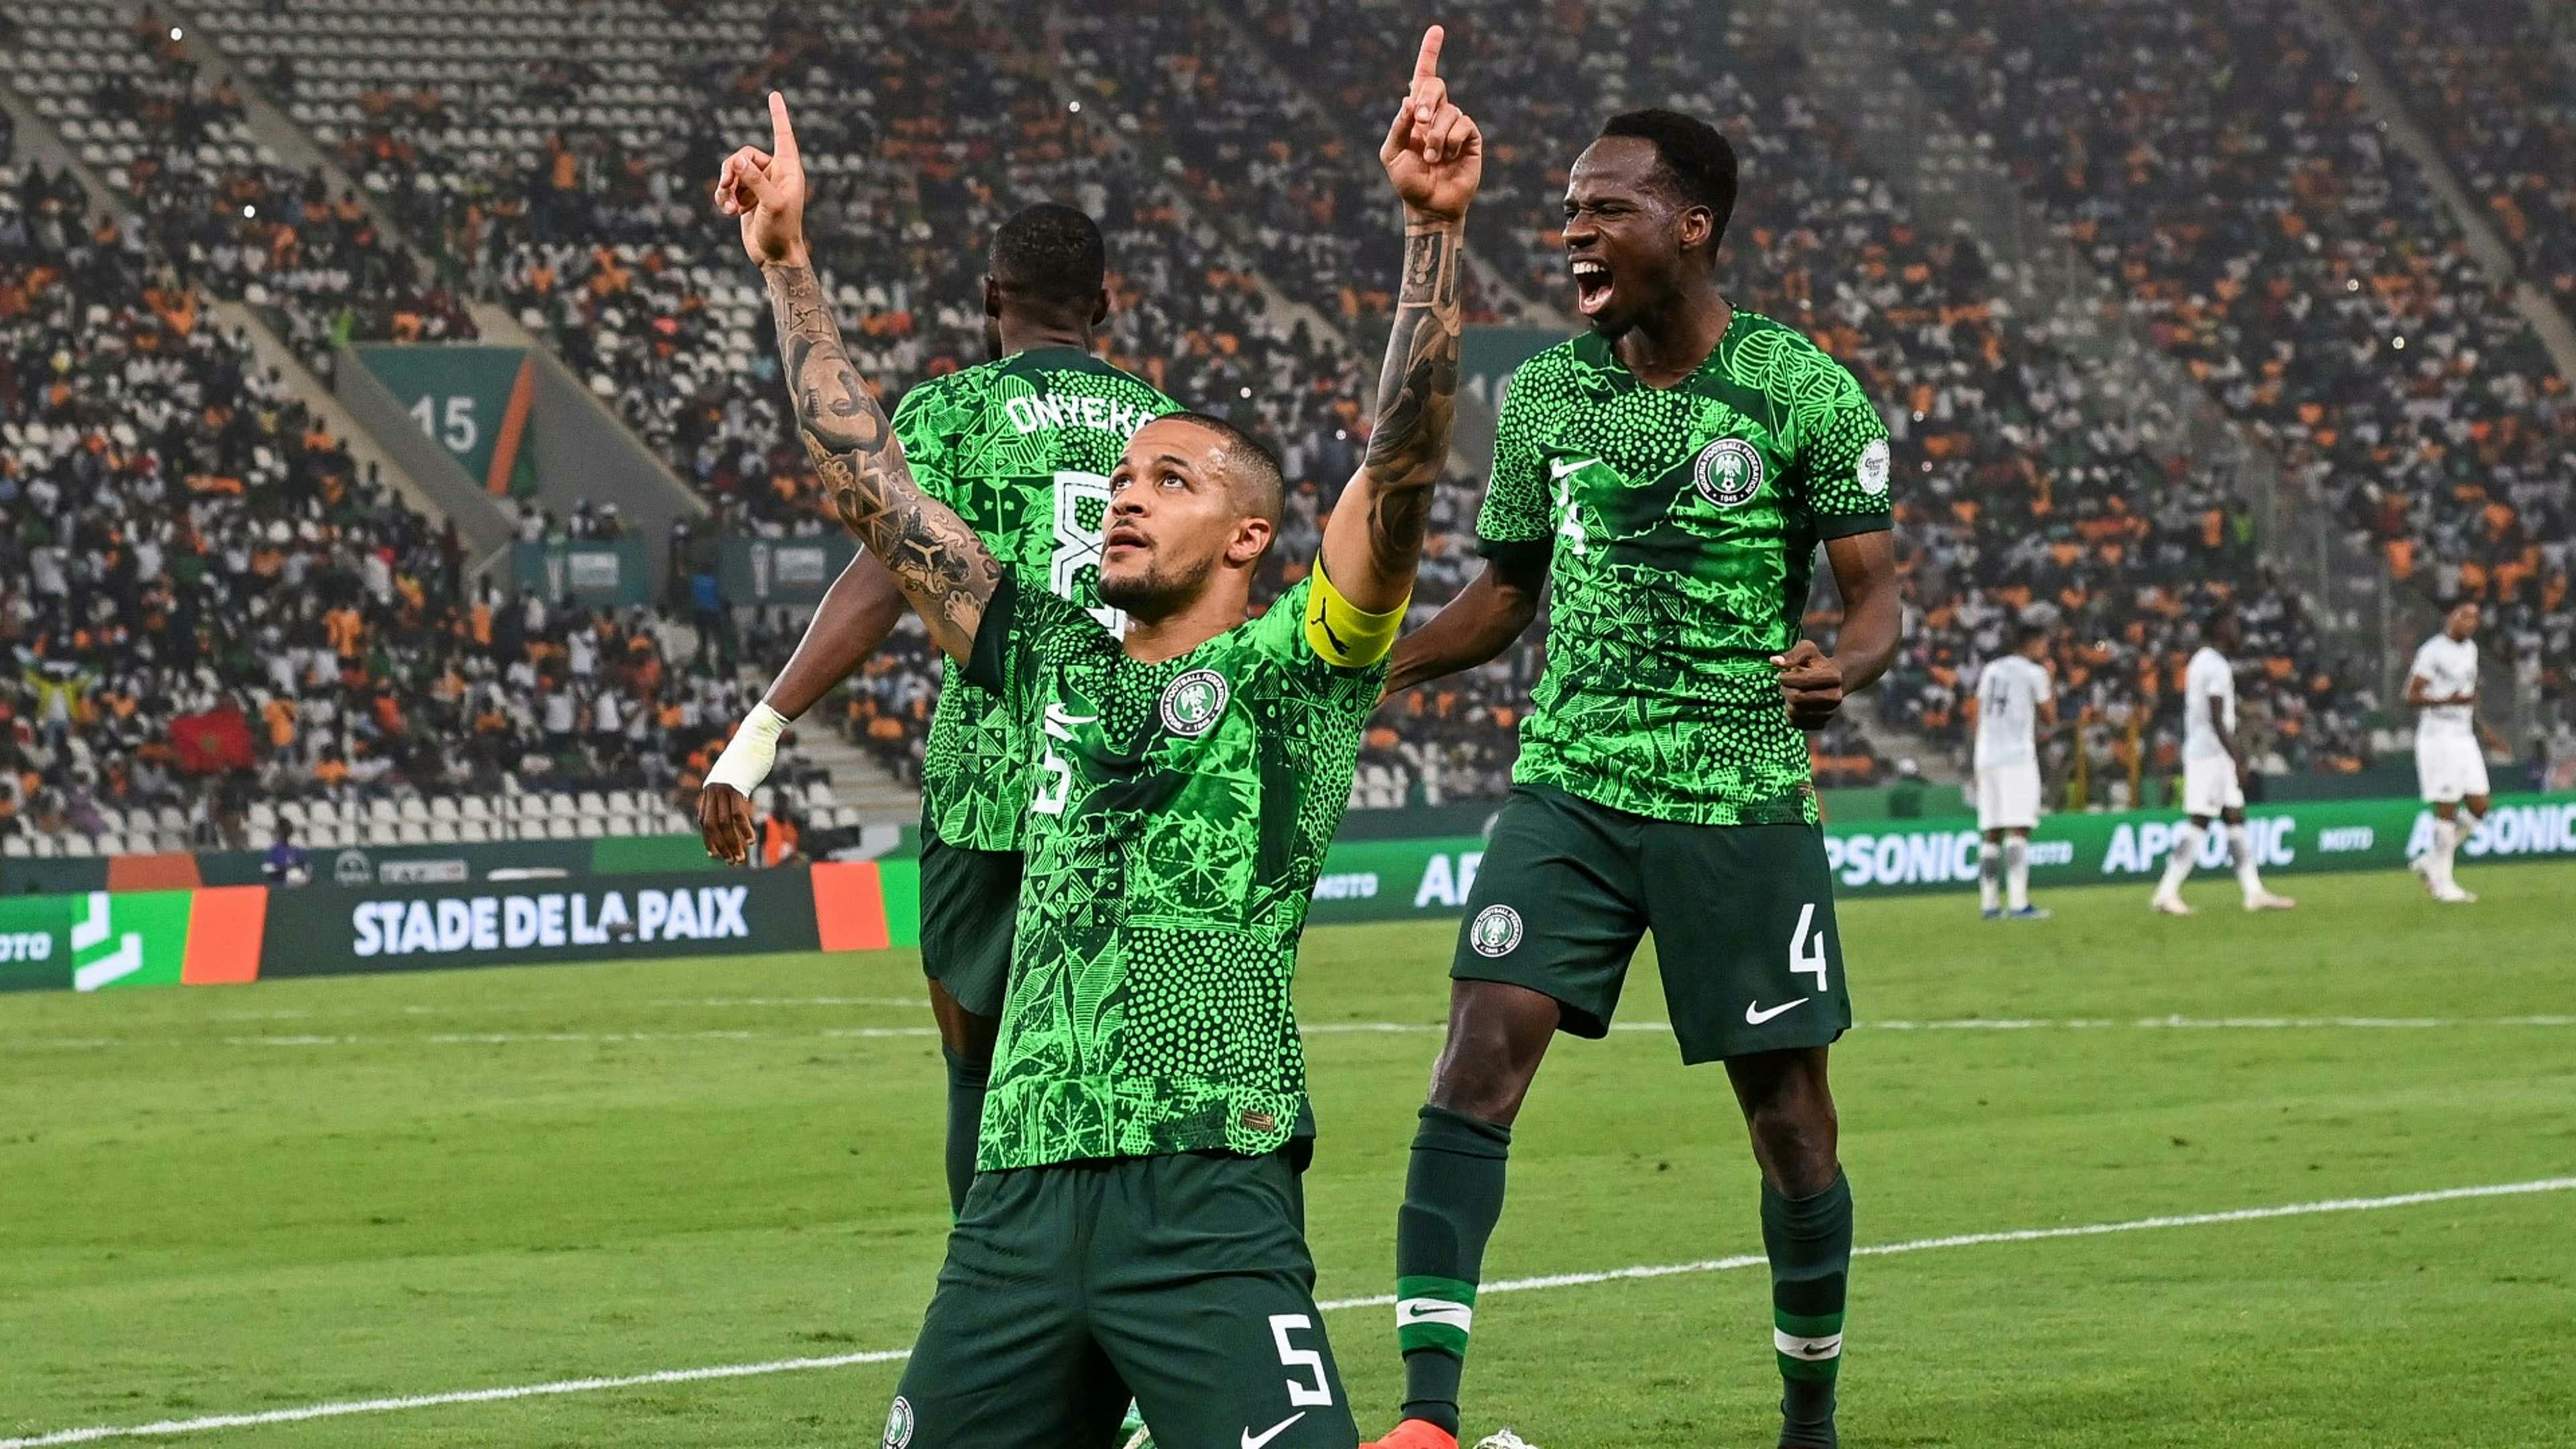  النيجيري إيكونغ أكثر المدافعين تسجيلا في أمم إفريقيا بـ5 أهداف